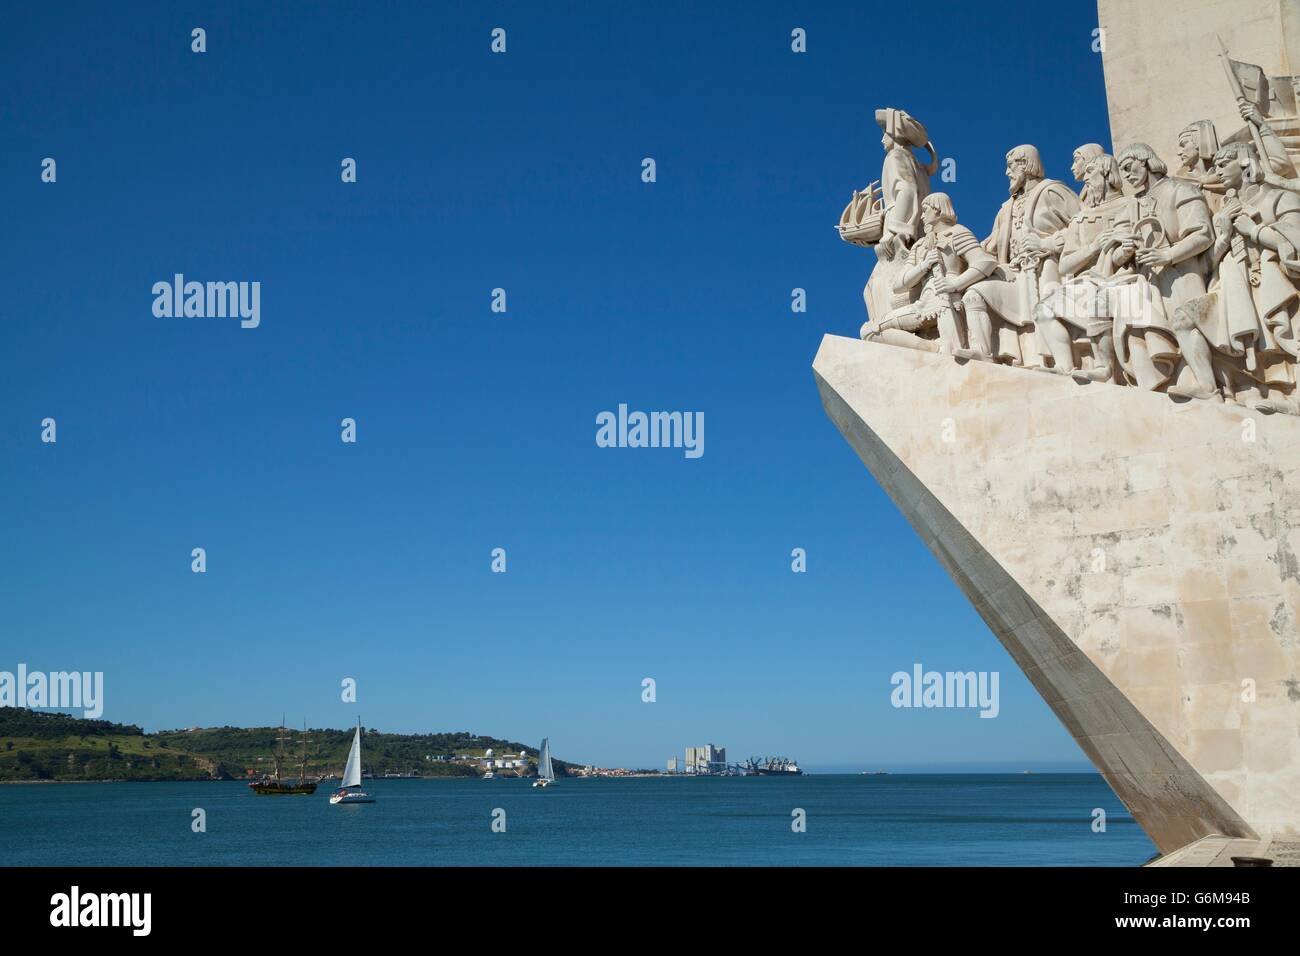 Monument de la découverte à Belém, Lisbonne. Le momument montre Henri le navigateur à l'avant-garde et célèbre l'âge portugais o Banque D'Images